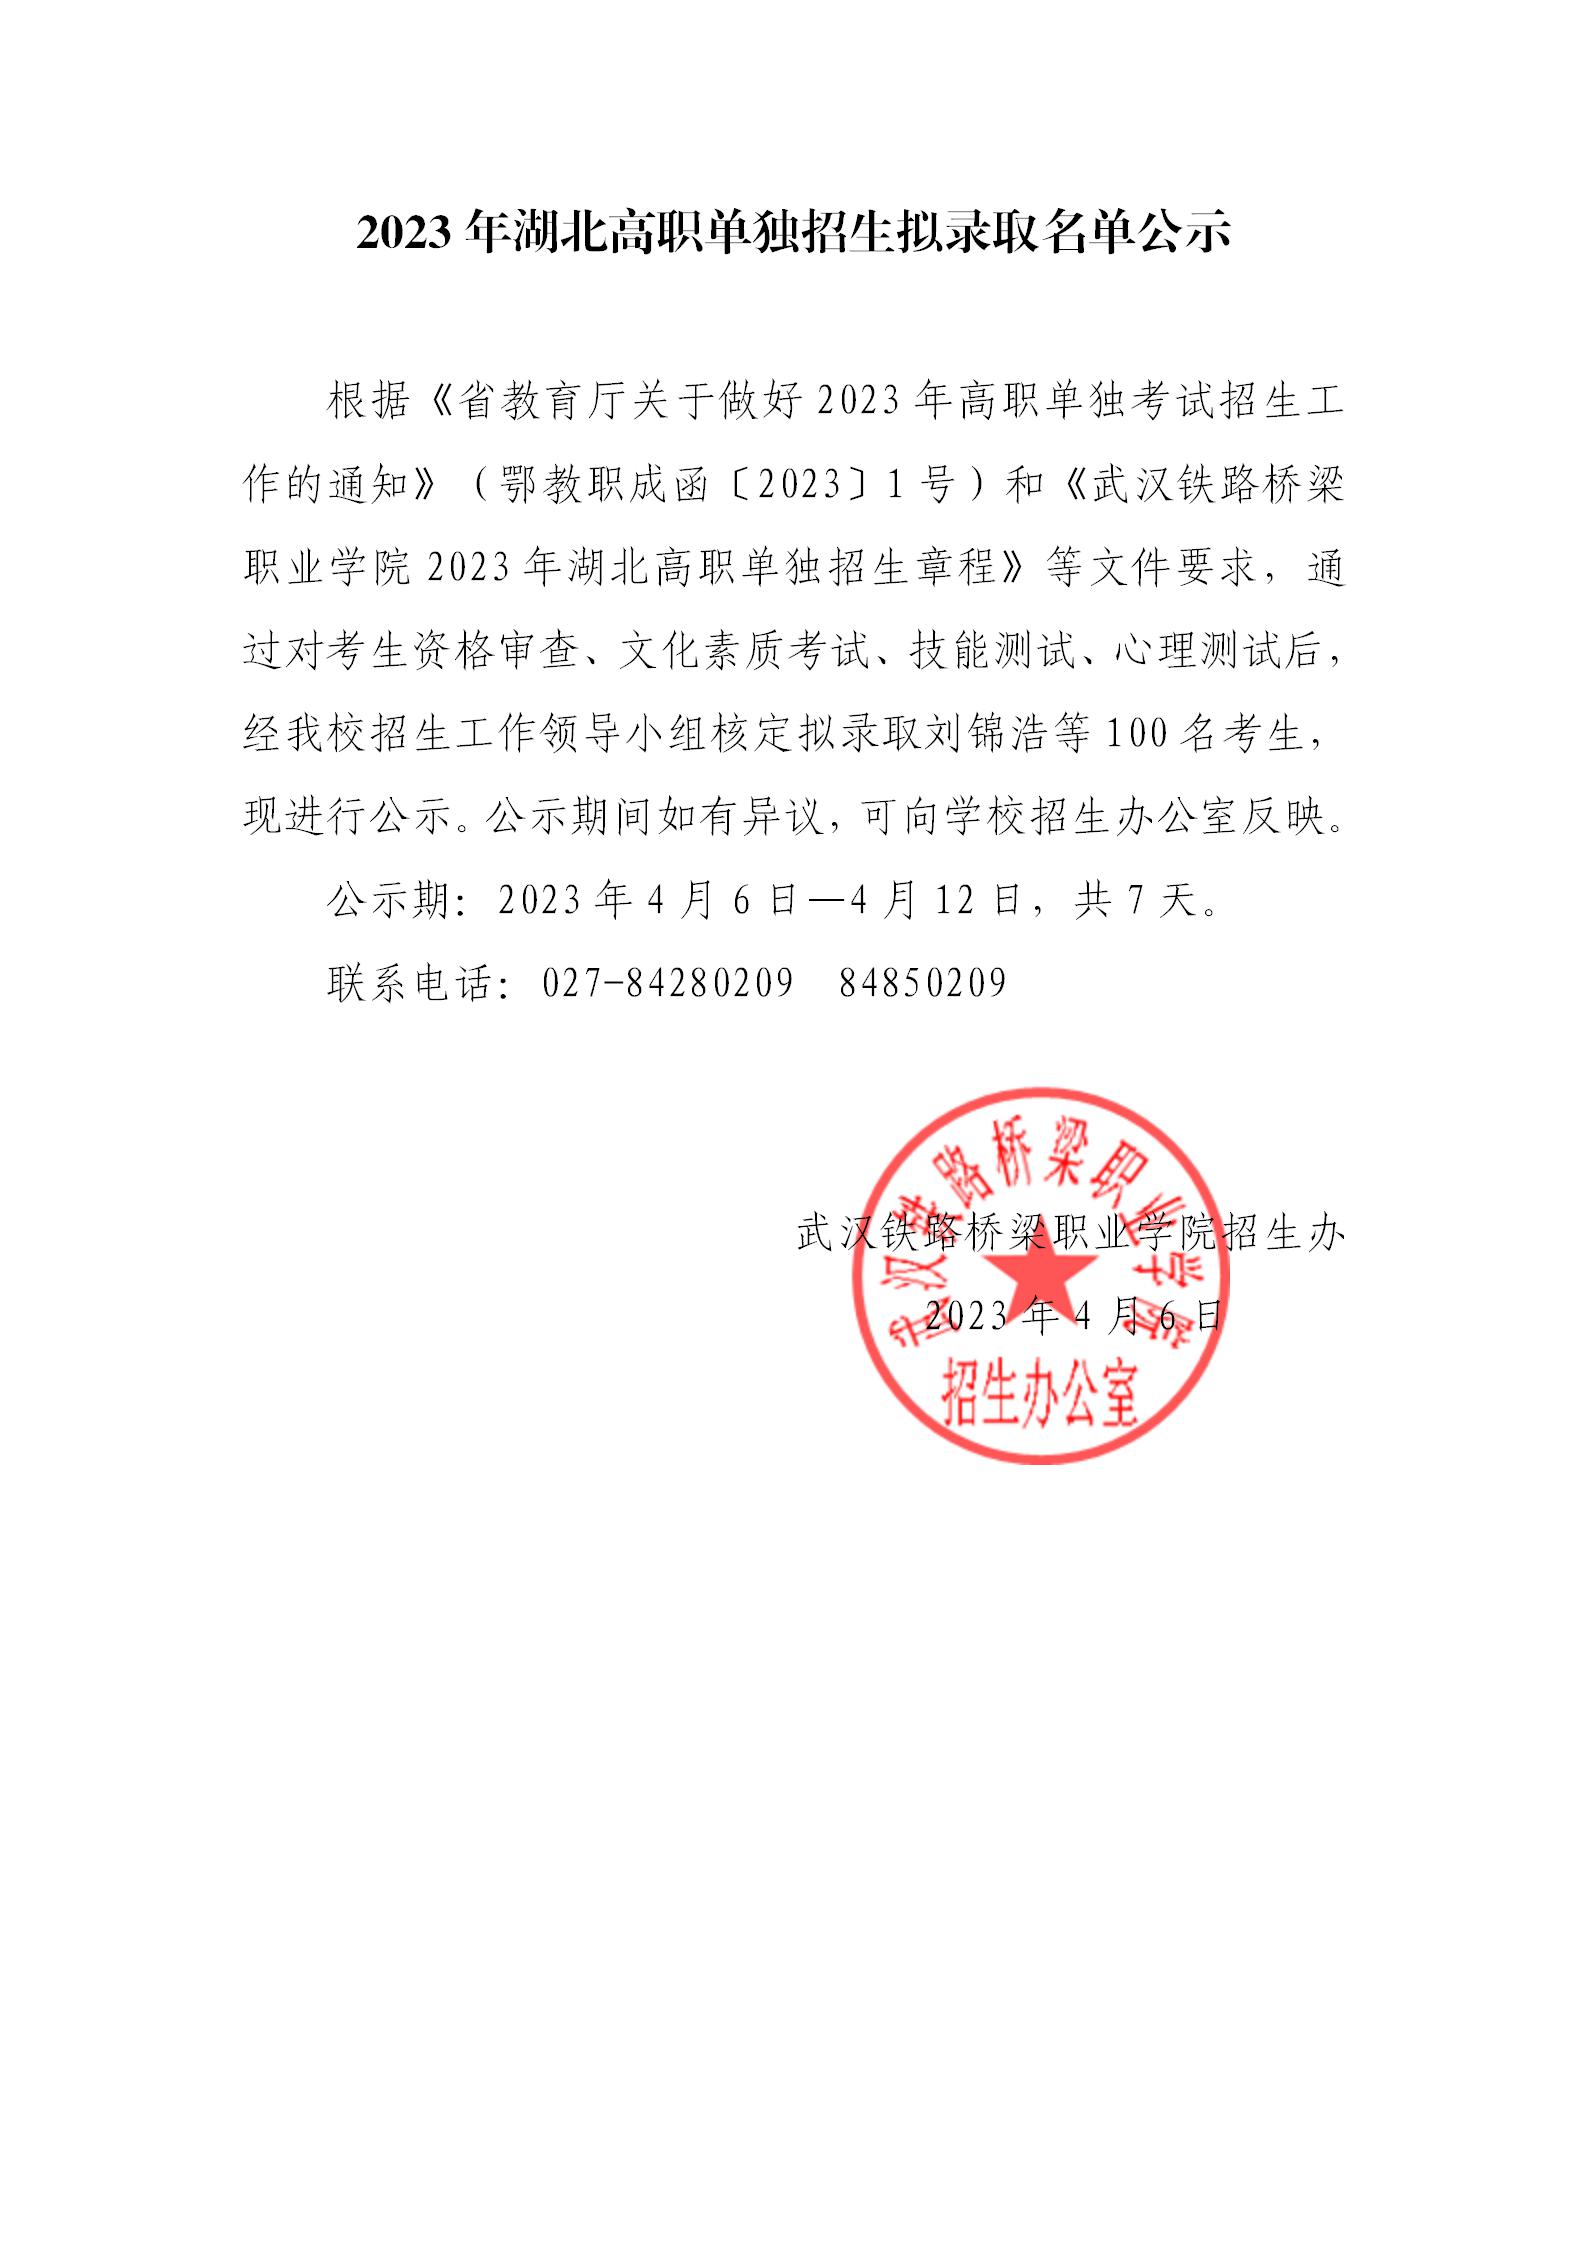 武汉铁路桥梁职业学院2023年湖北高职单招拟录取情况公示_01.jpg